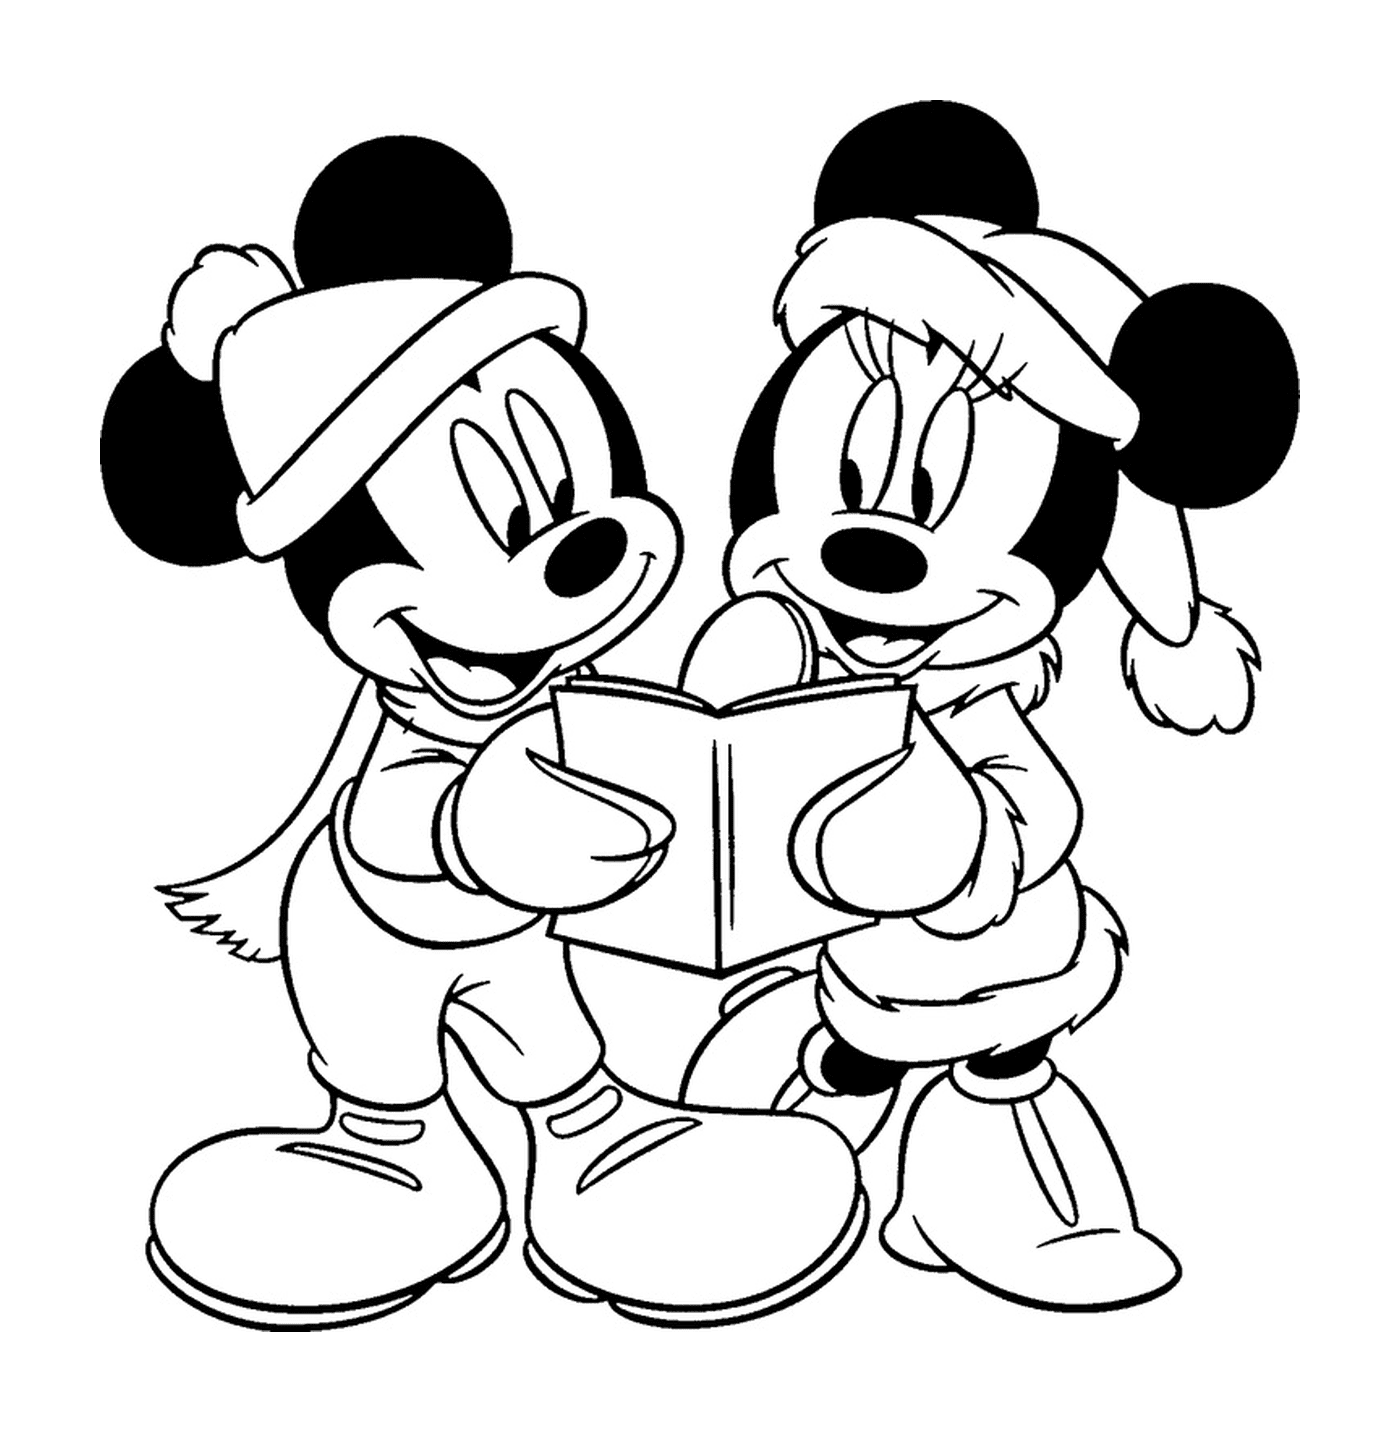  Mickey y Minnie leen libros 